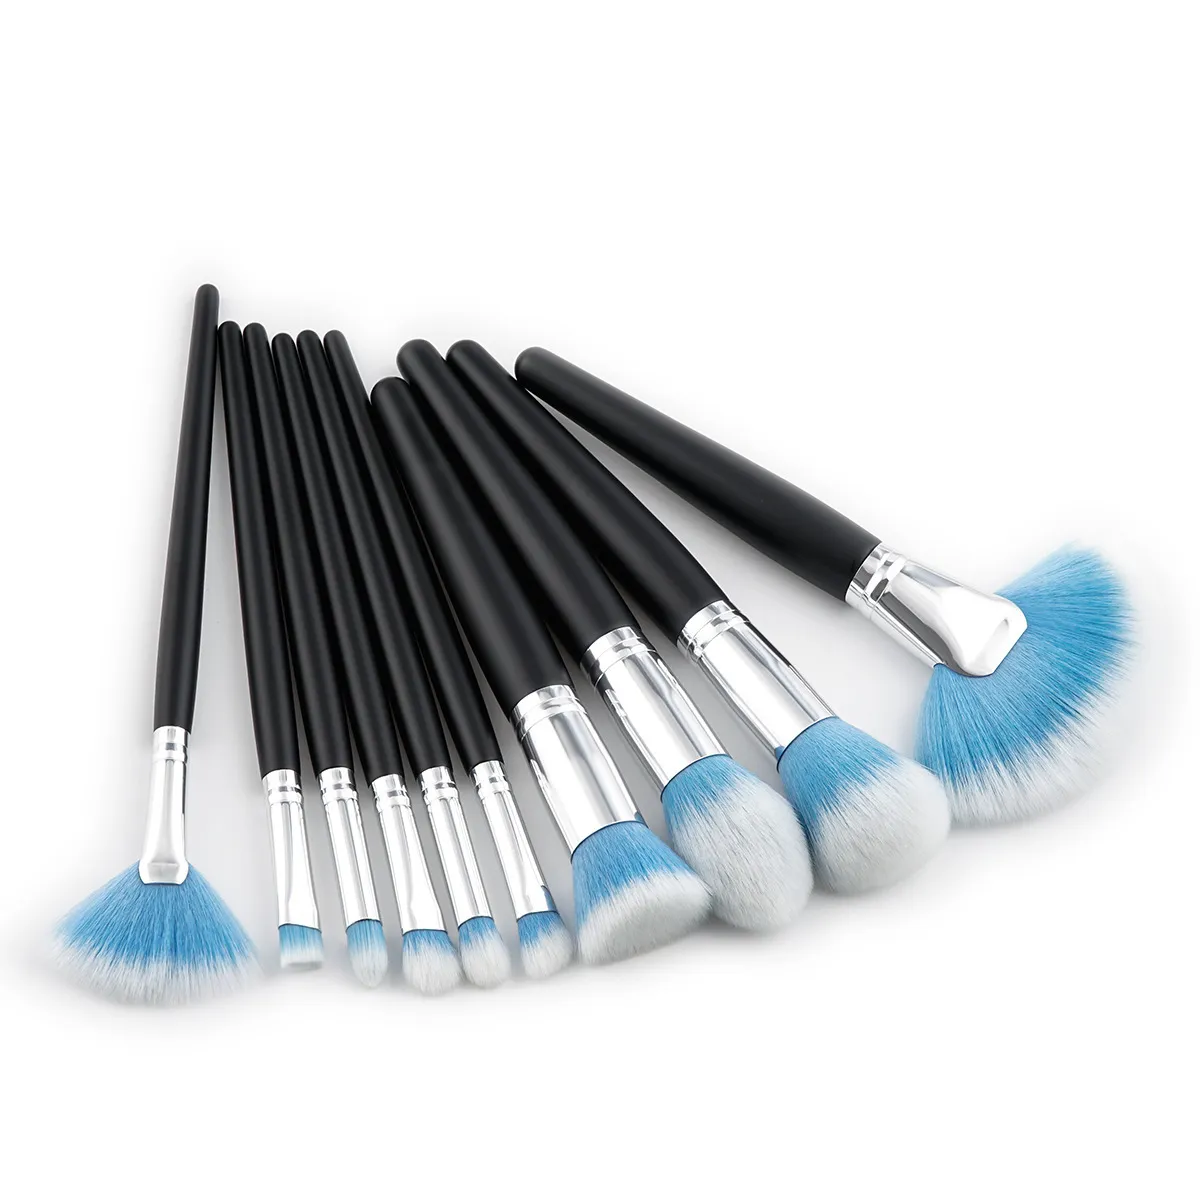 Novo Kabuki Escova Set Professional Makeup Brushes Conjuntos de Ferramentas Make Up Brushes Pincel Cosméticos Completo Sombra Lip Face Em Pó Escova Kit